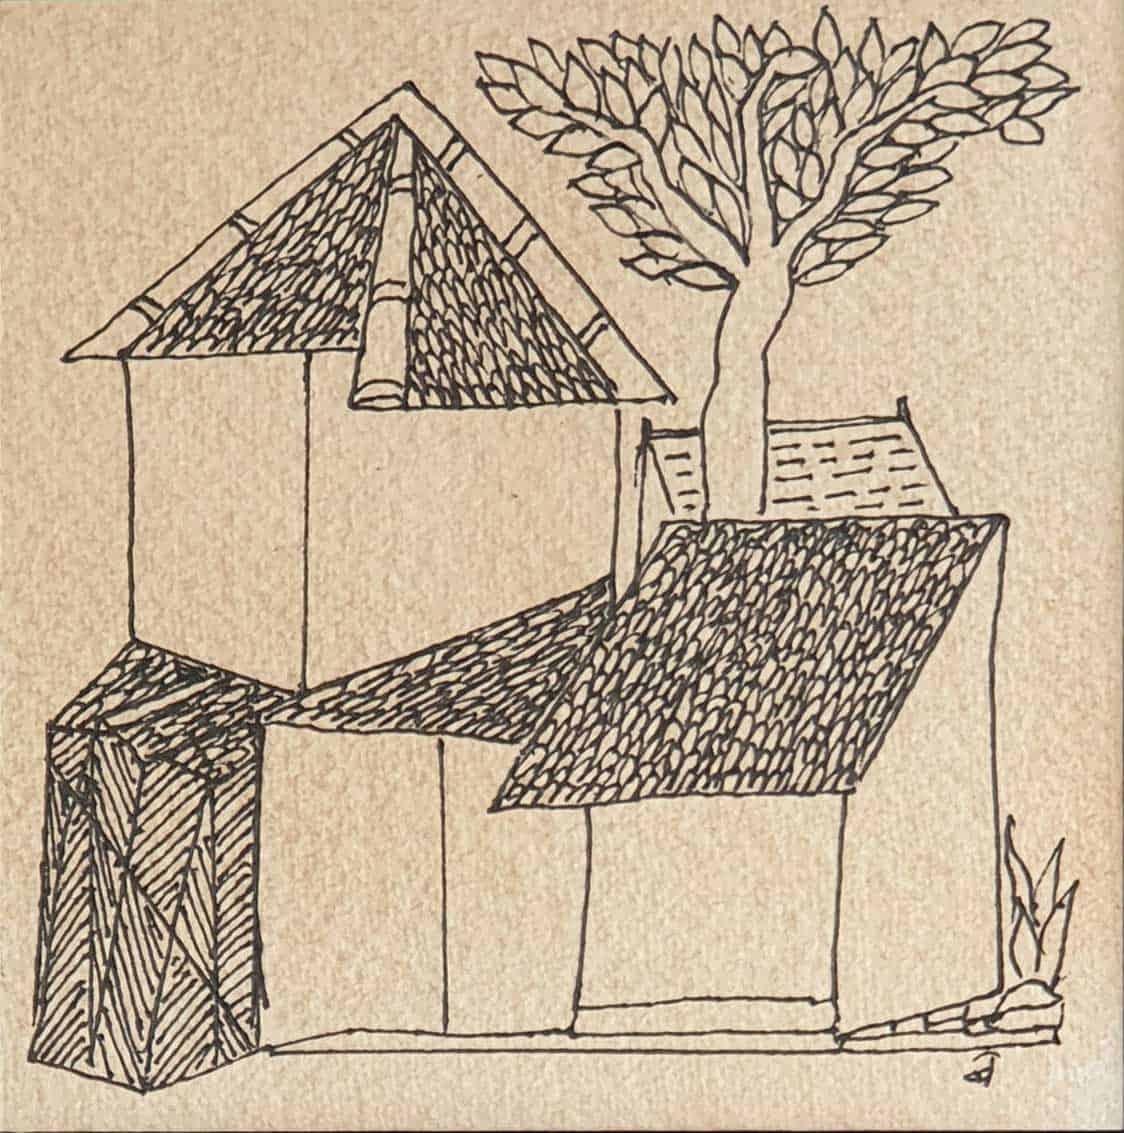 narayan paper house